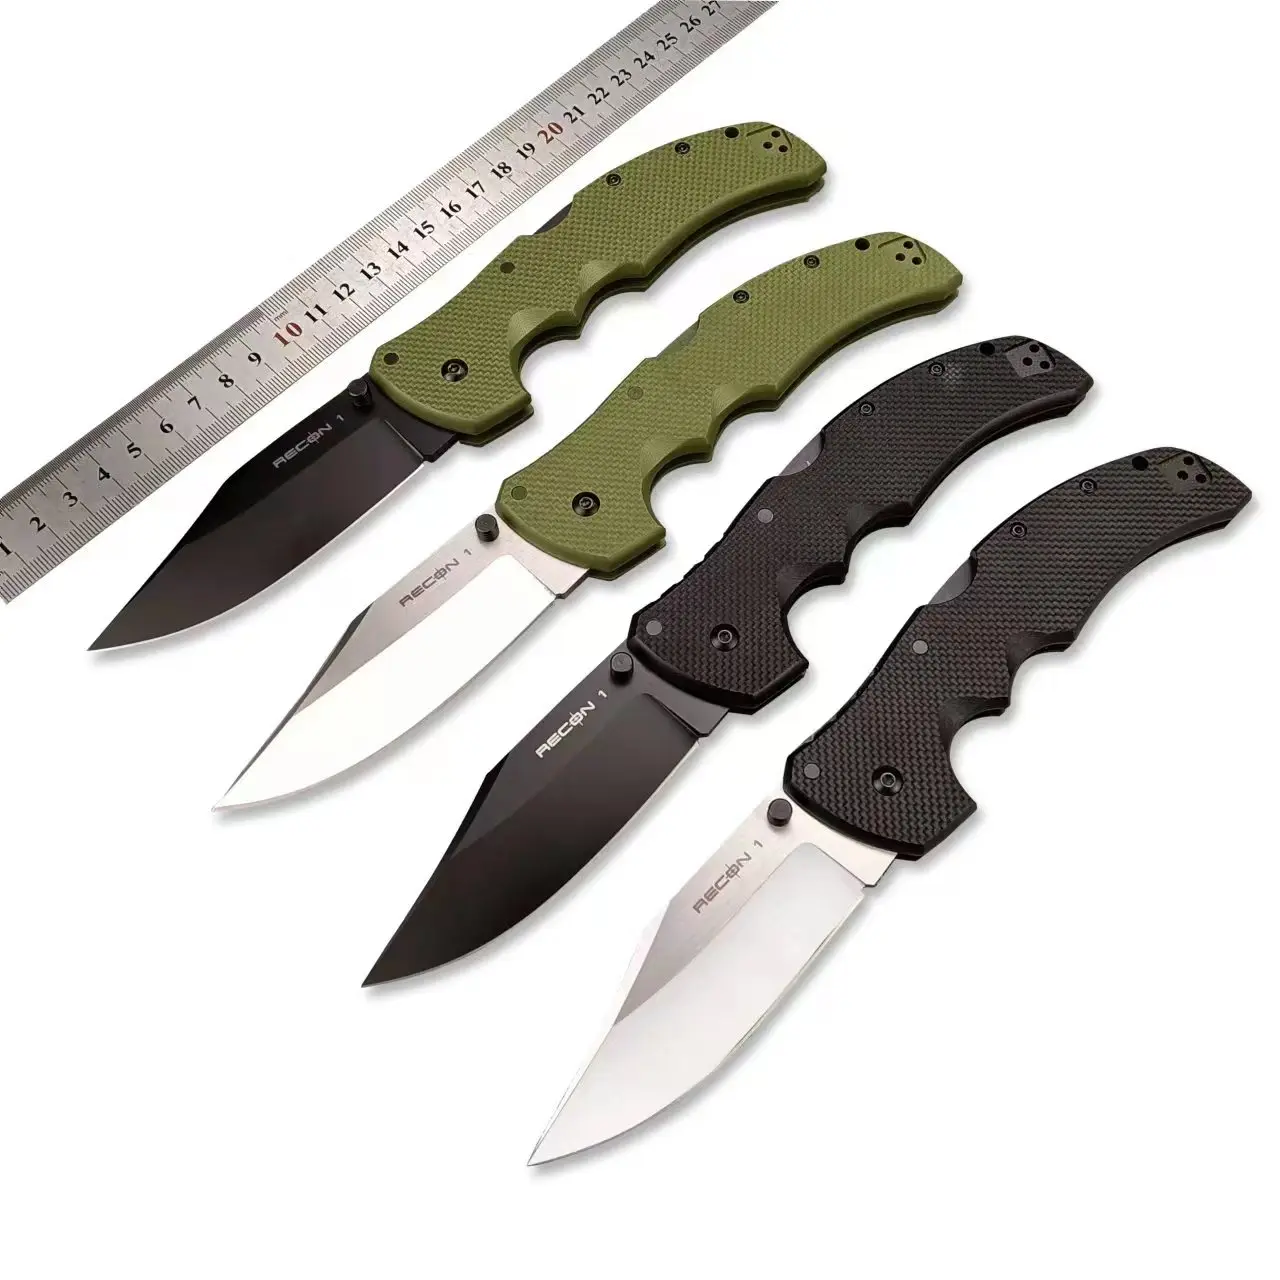 

Складные туристические тактические ножи с рукояткой из холодной стали RECON1 уличный карманный нож S35VN Blade G10, охотничьи ножи для выживания, универсальные инструменты для повседневного использования